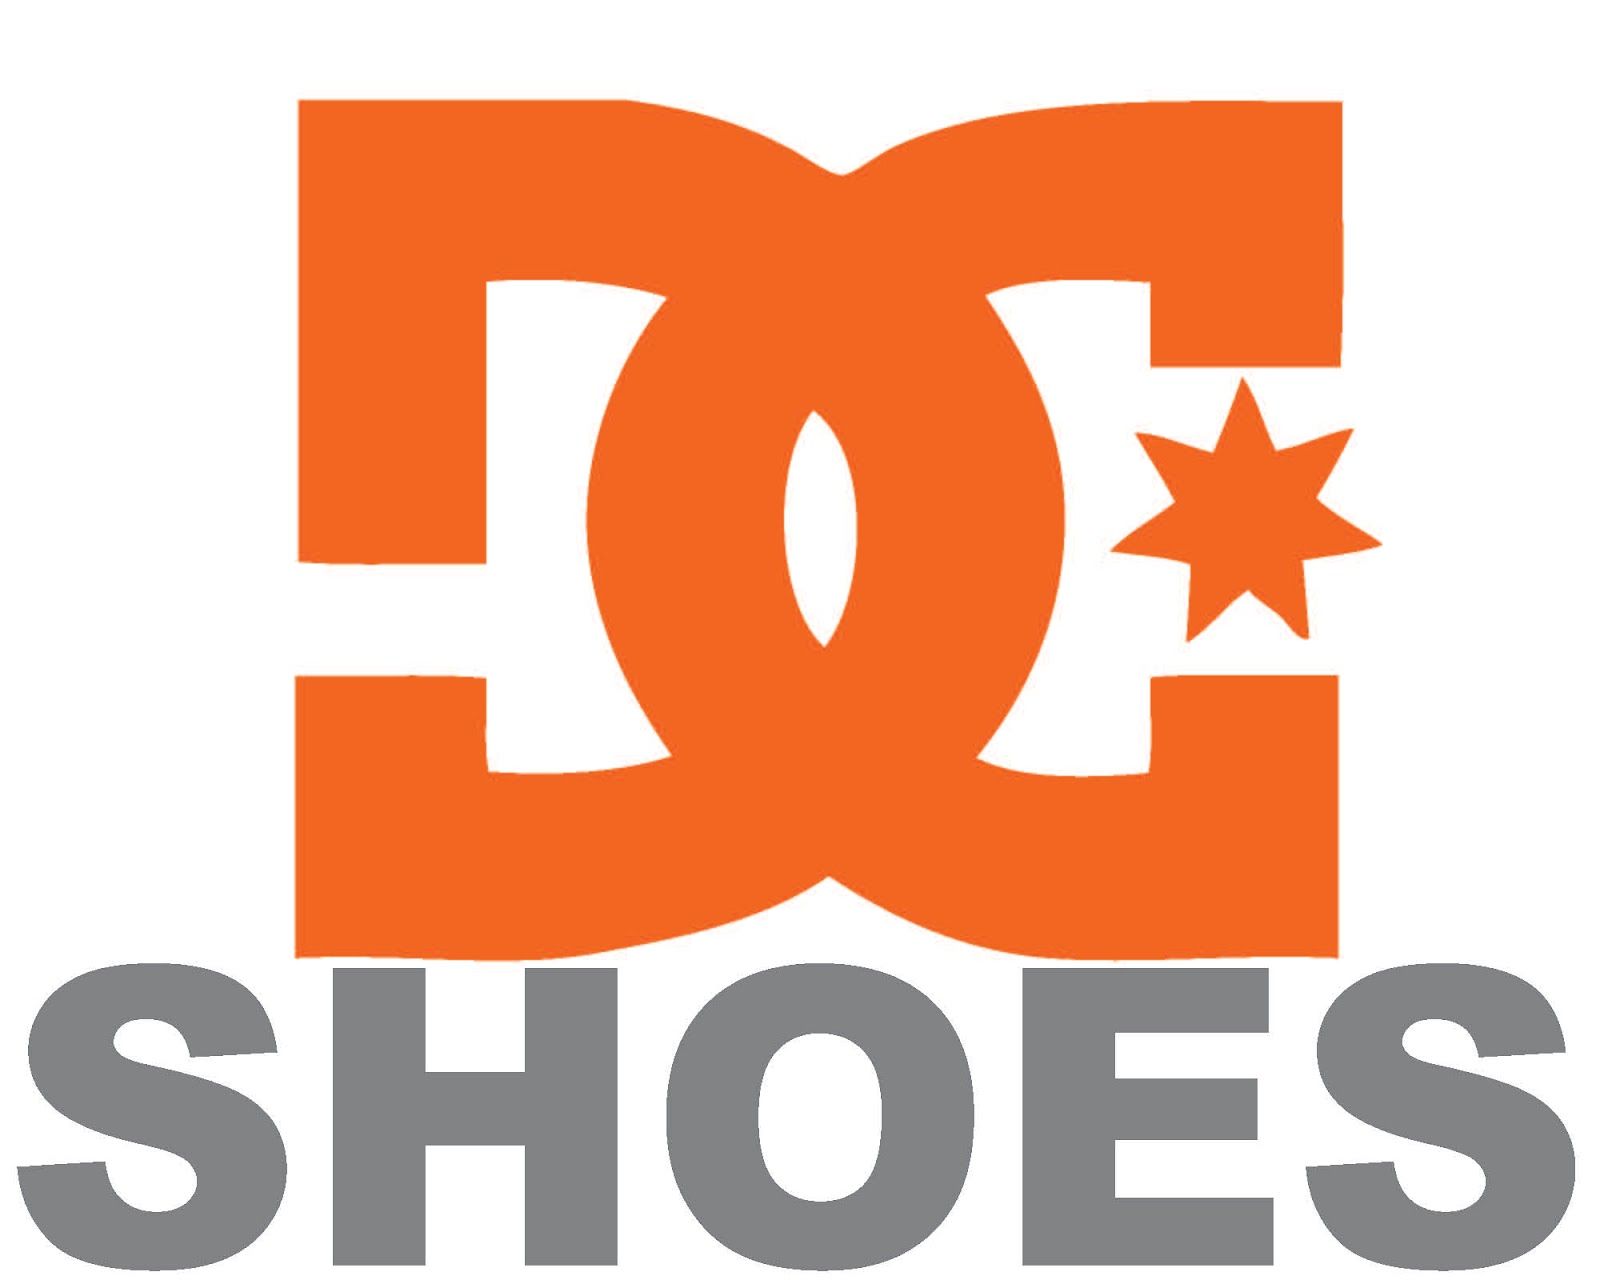 HD Dc Shoes Logo Wallpaper